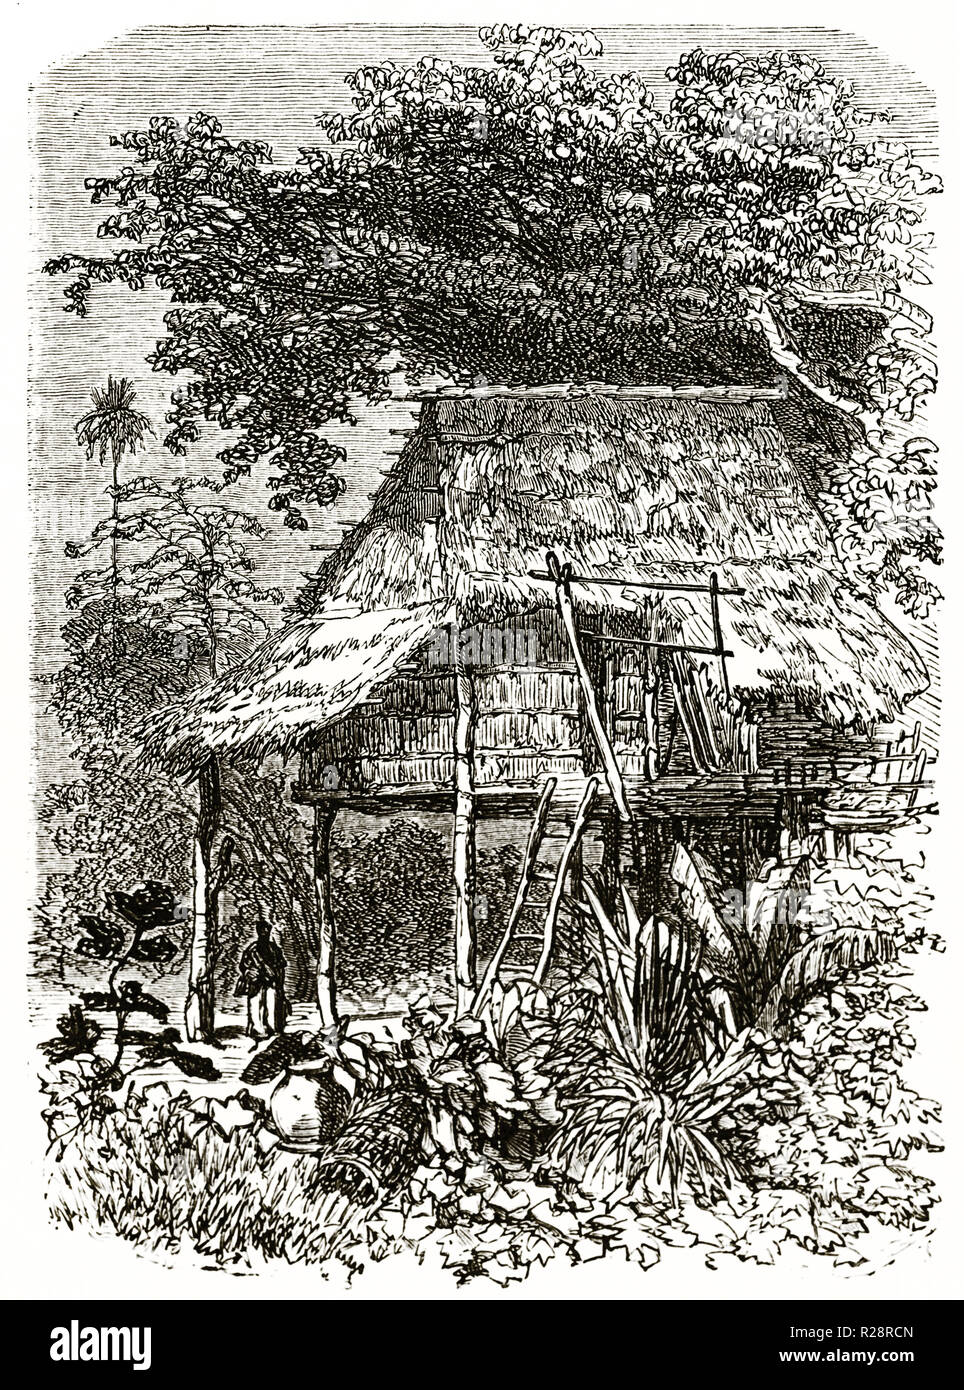 Ilustración de la vieja cabaña de Laos. Por Sabatier después Mouhot, publ. en le Tour du Monde, París, 1863 Foto de stock